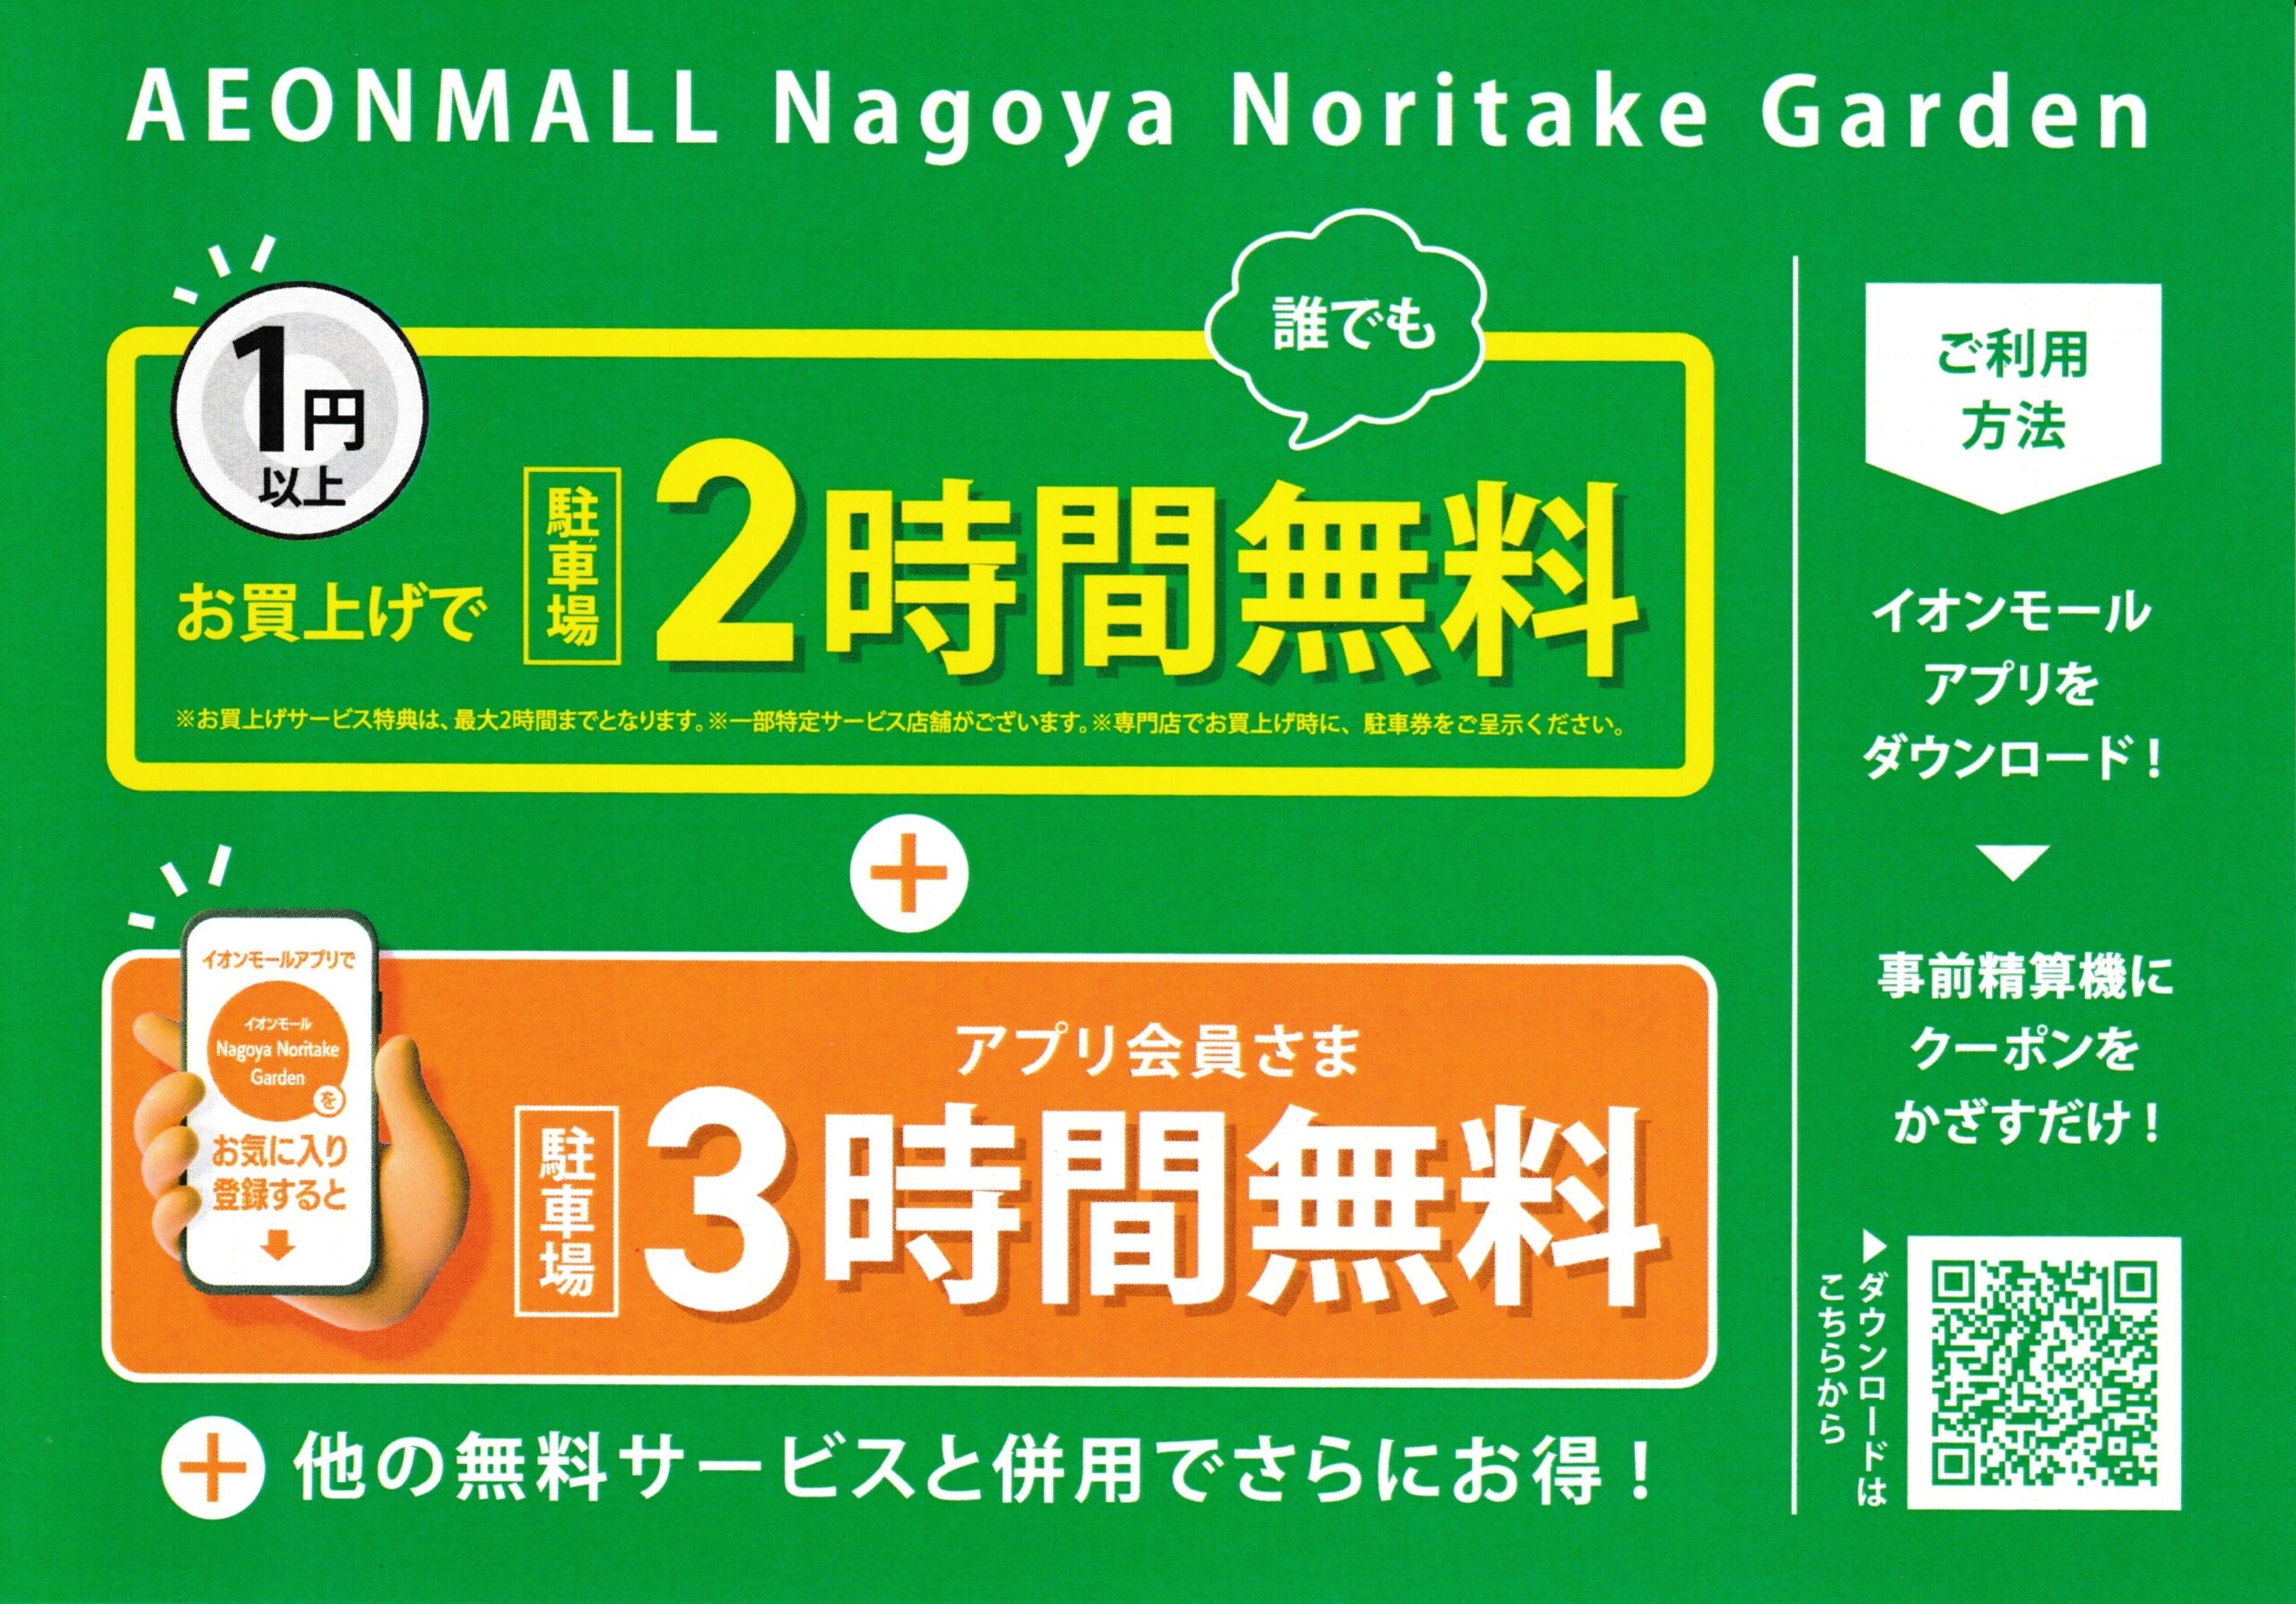 【イオンモール Nagoya Noritake Garden 1円(税込)以上のお買上げで 駐車料金 合計5時間無料!!】